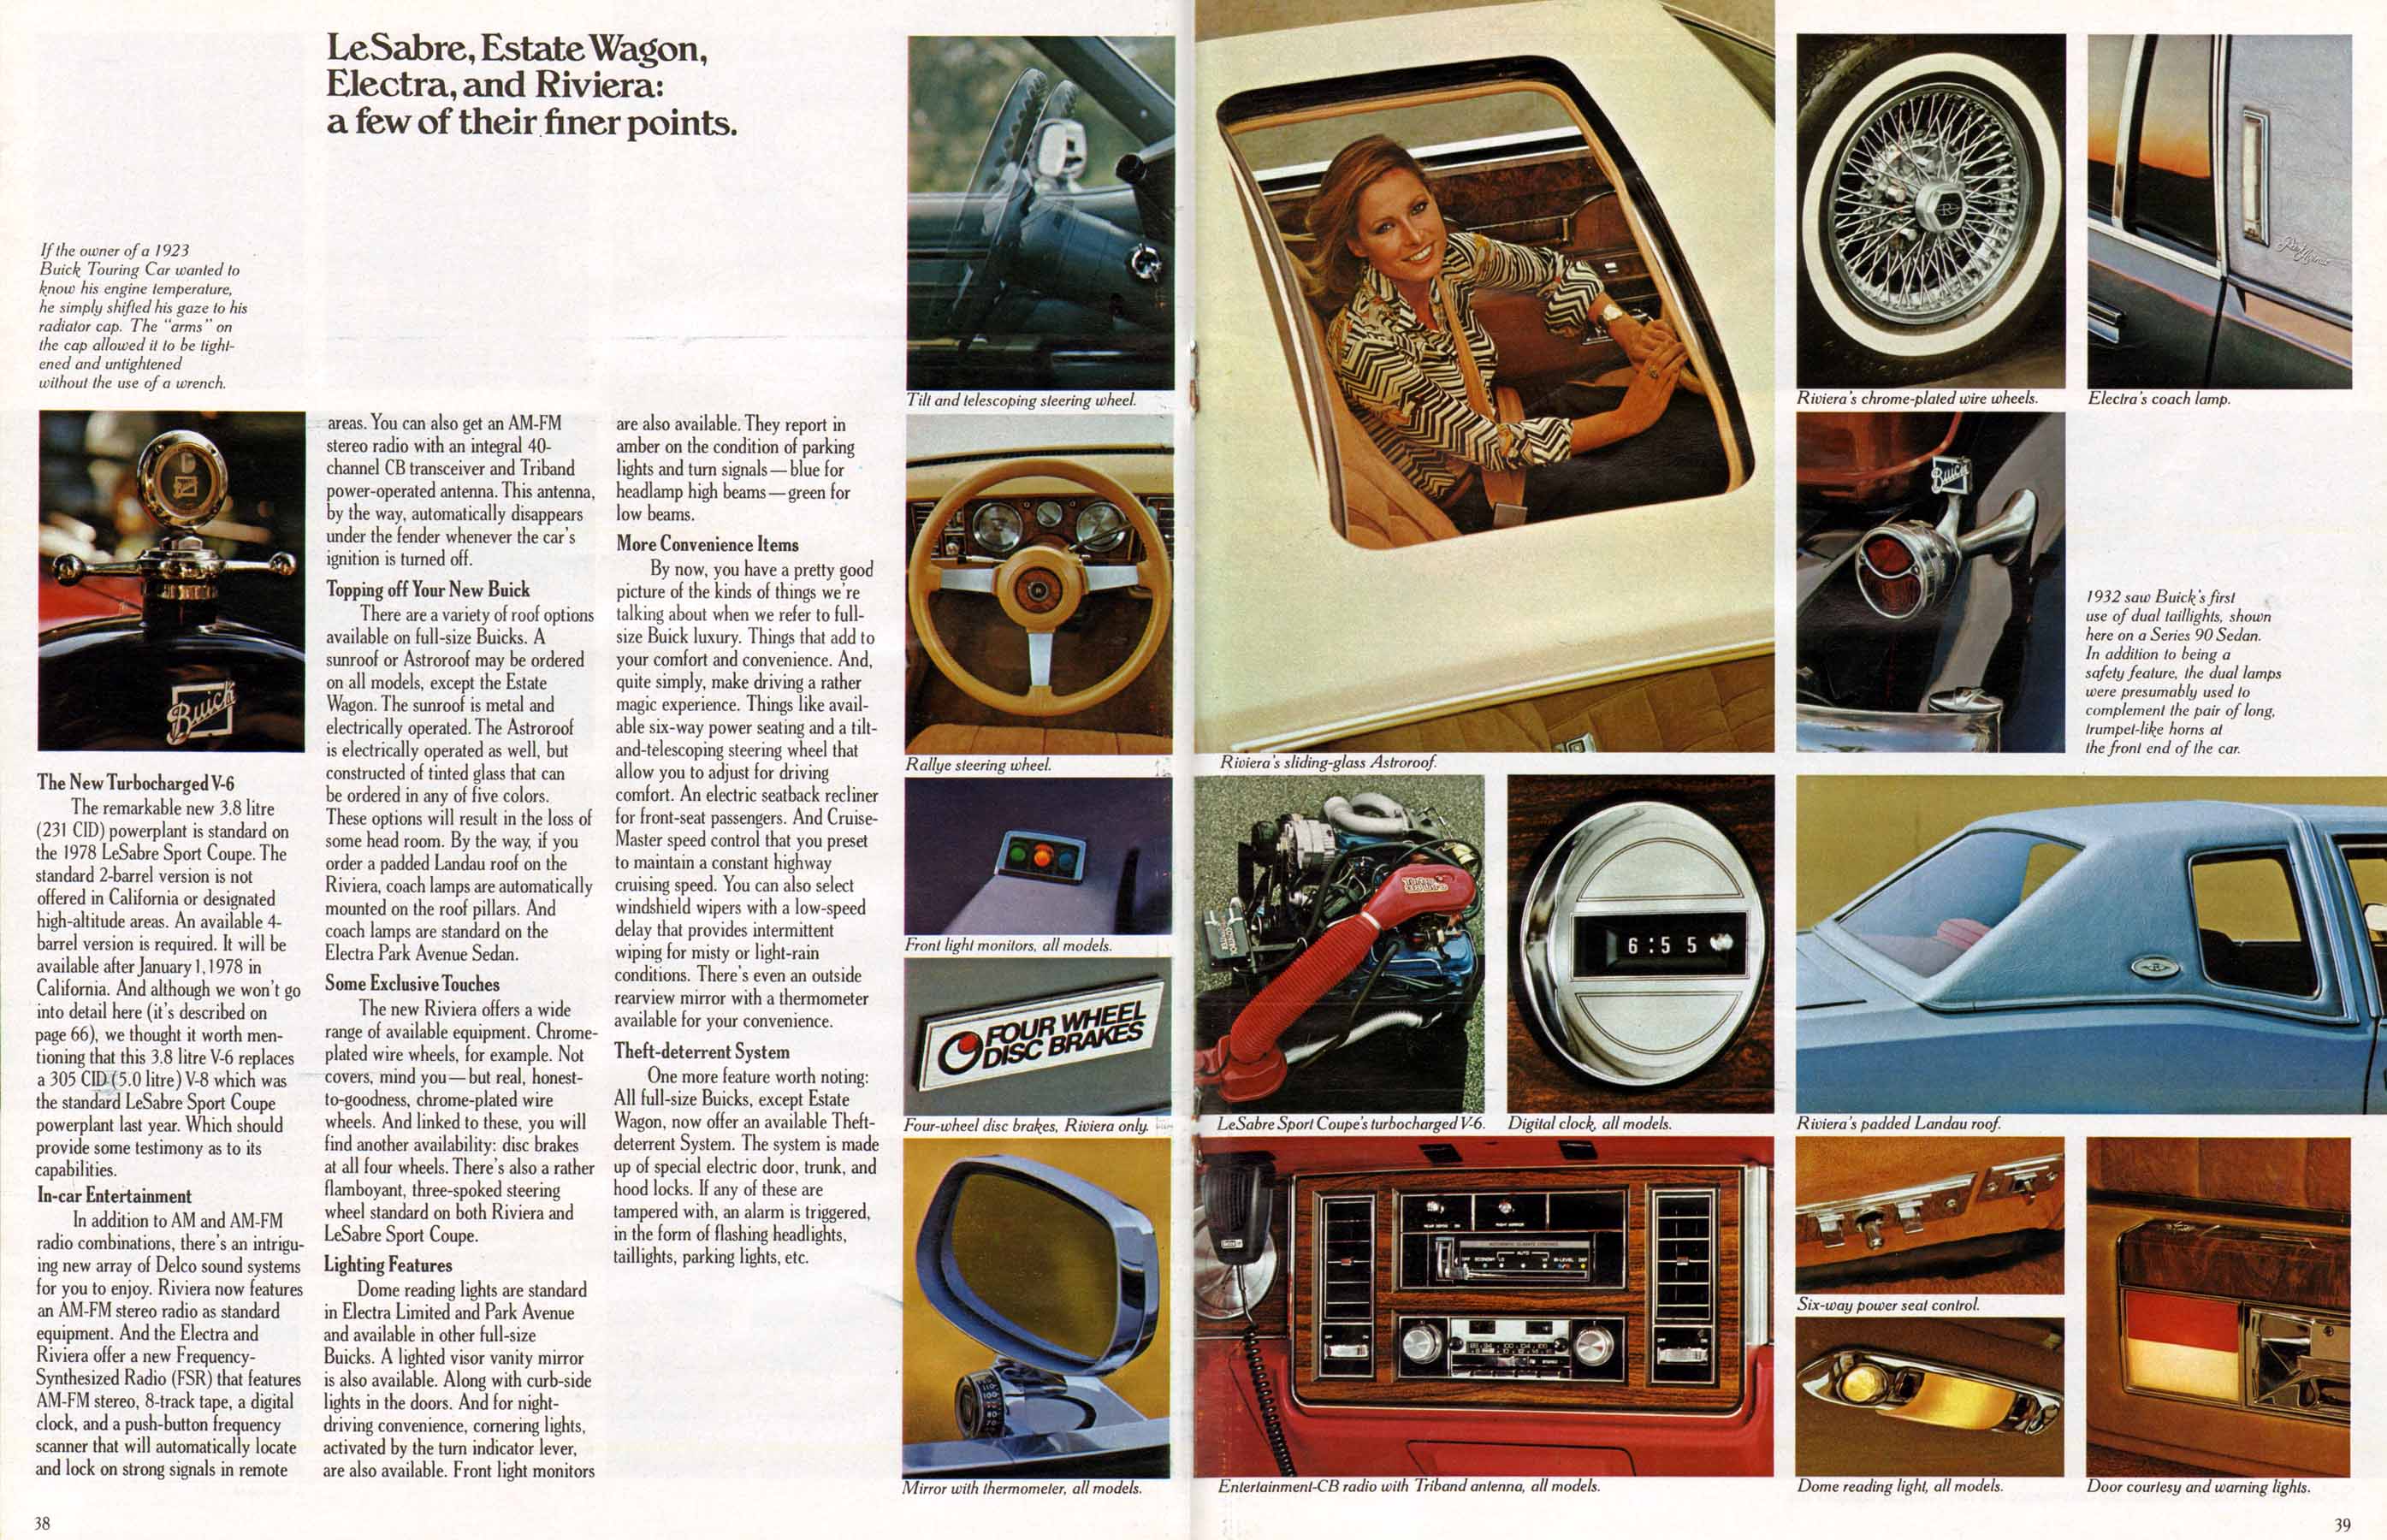 1978 Buick Full Line Prestige-38-39